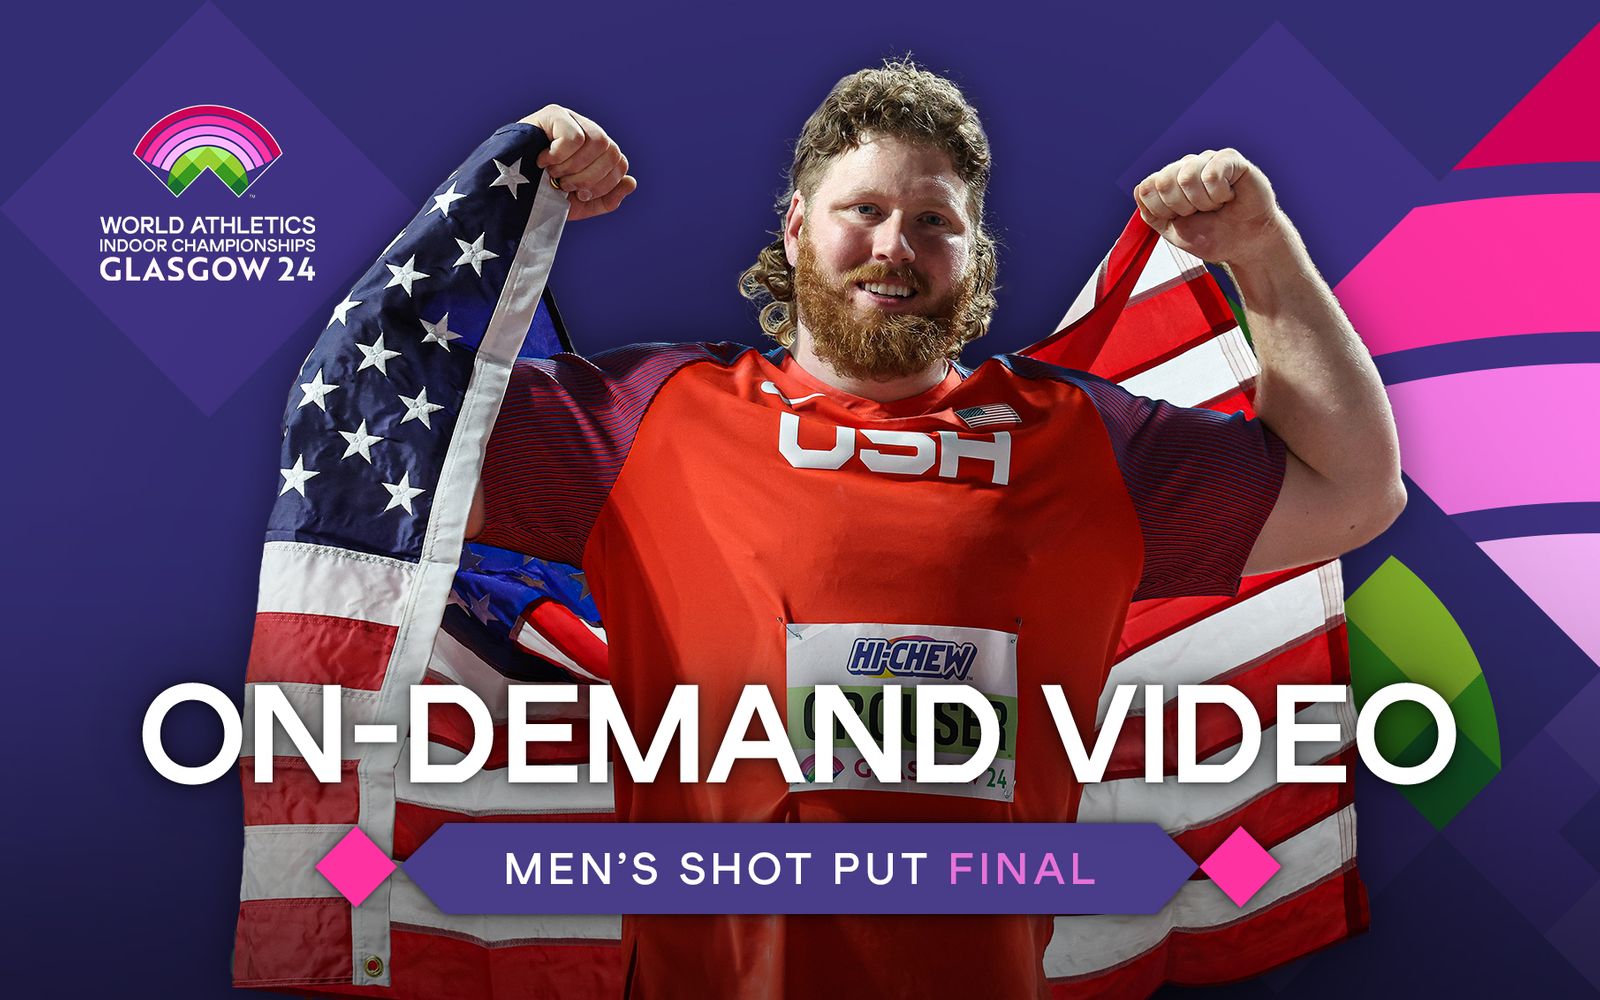 Men's shot put final on demand